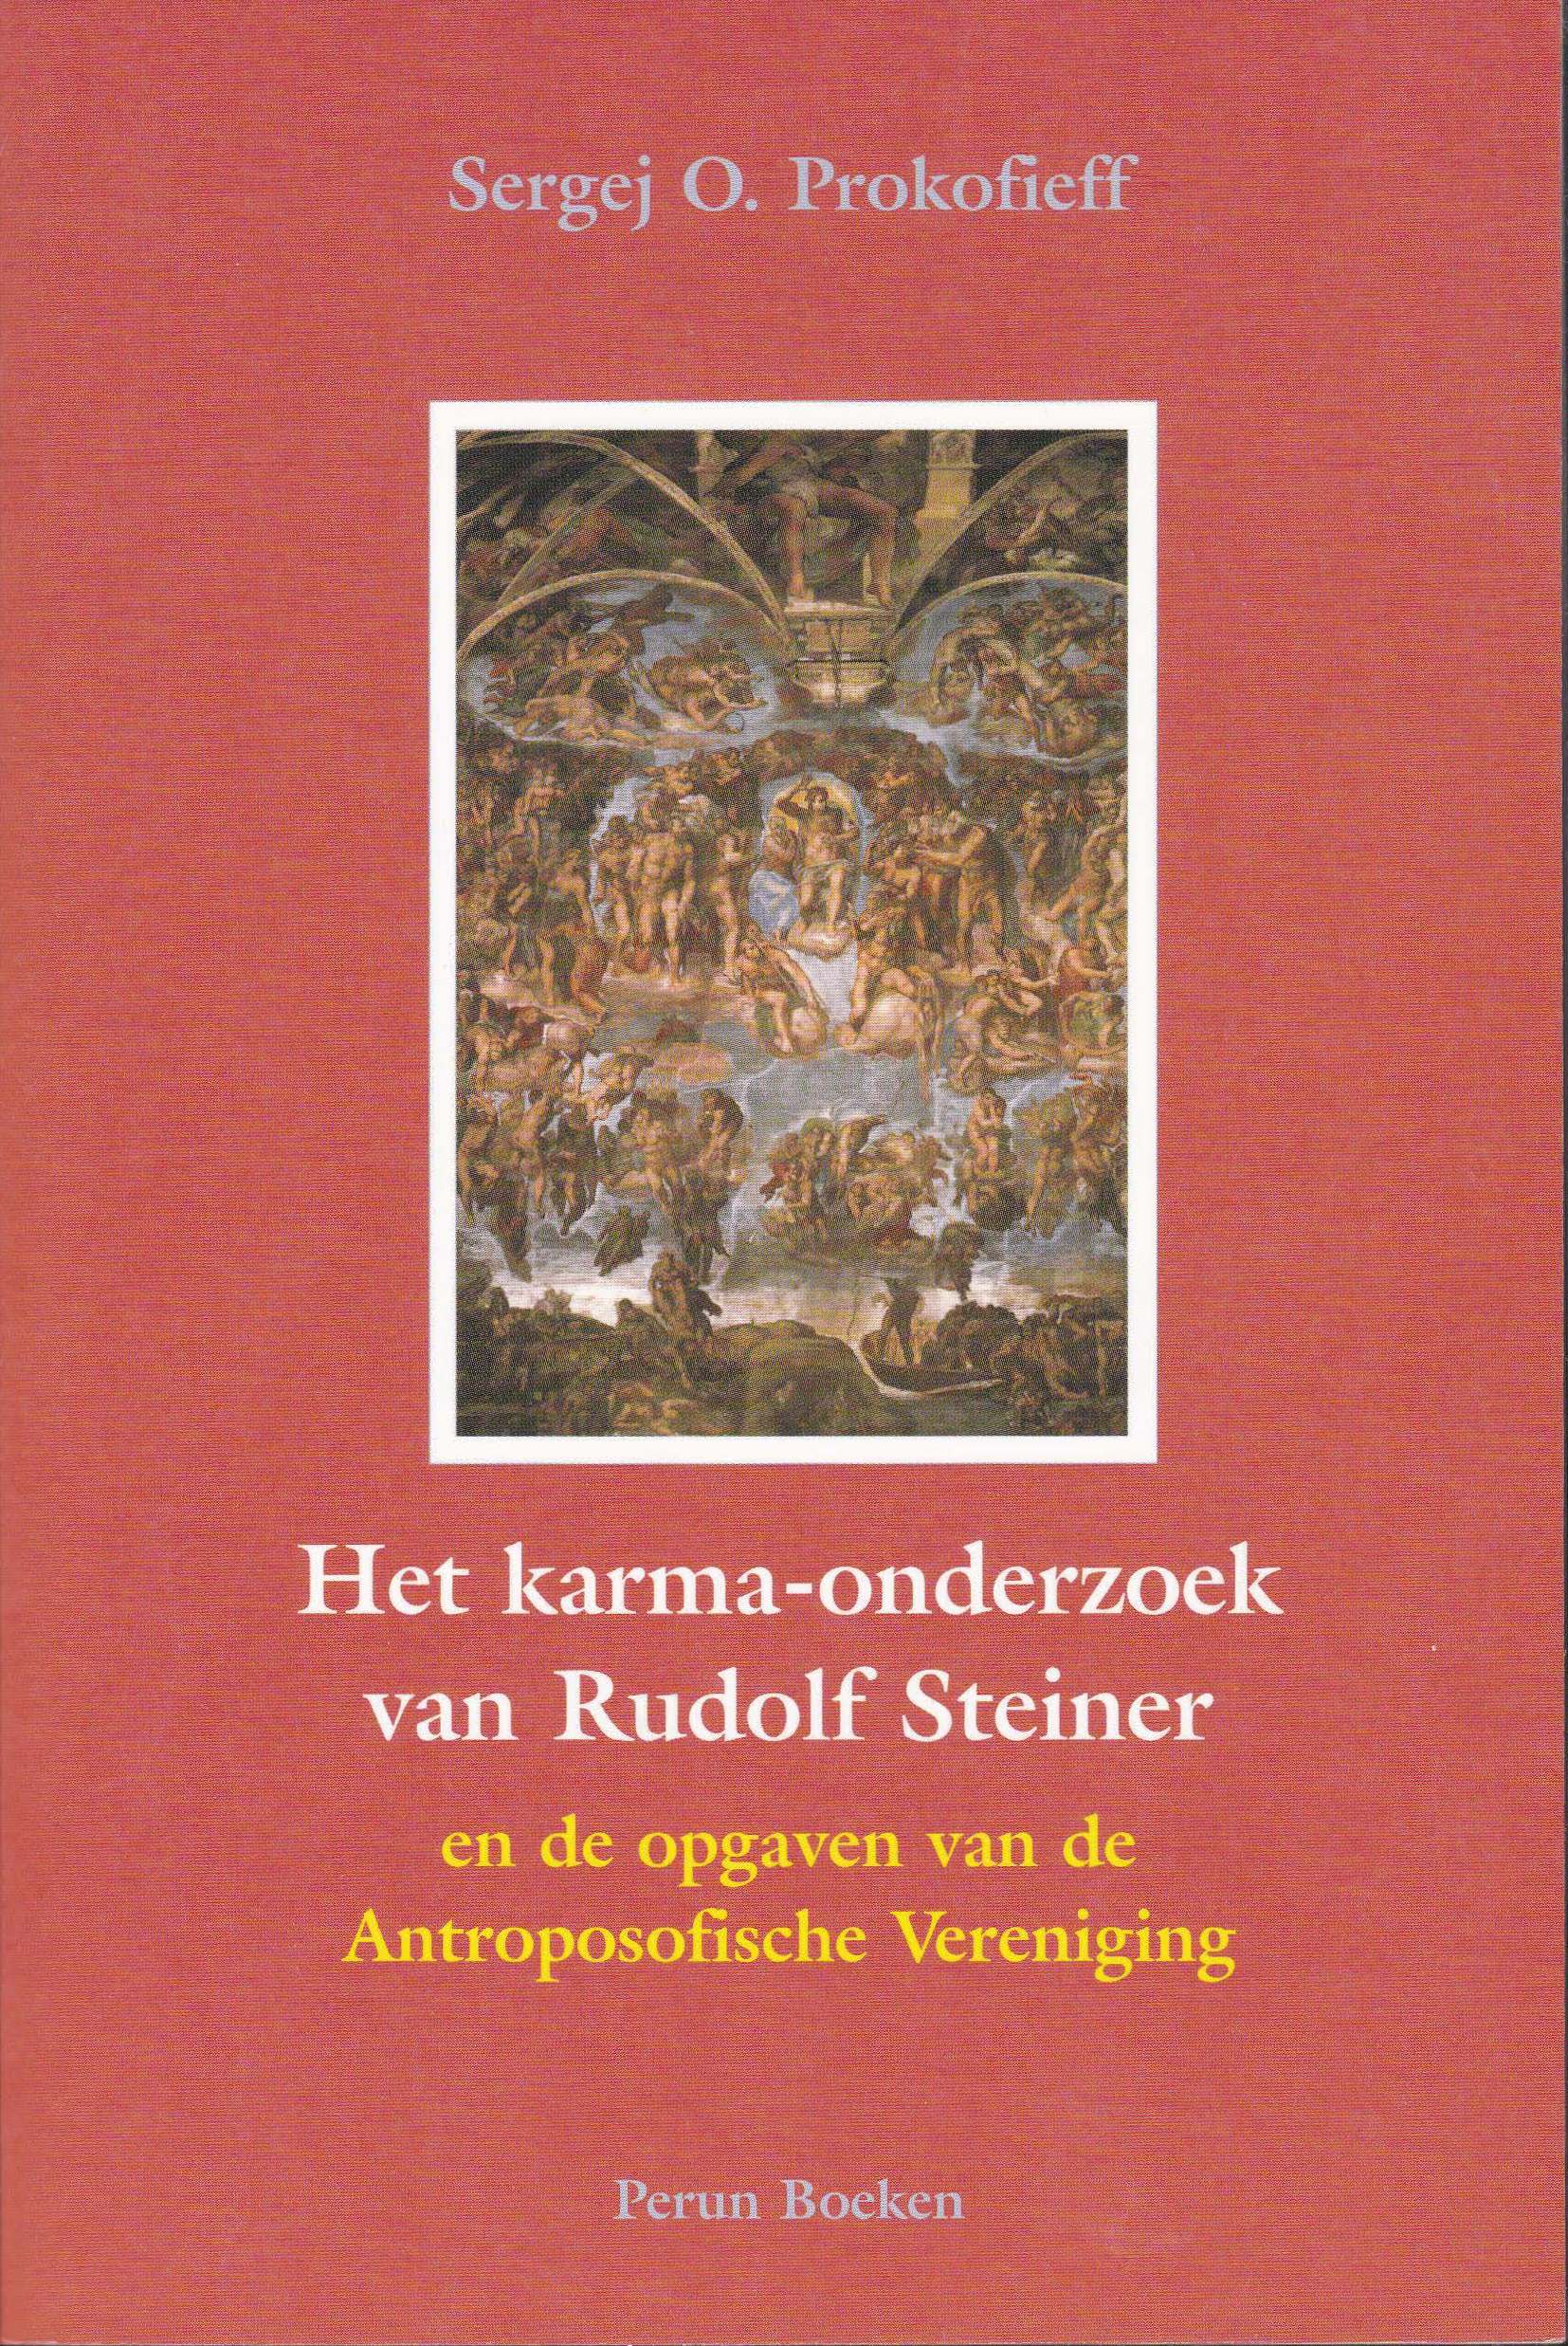 Het karma-onderzoek van Rudolf Steiner en de opgaven van de Antroposofische Vereniging